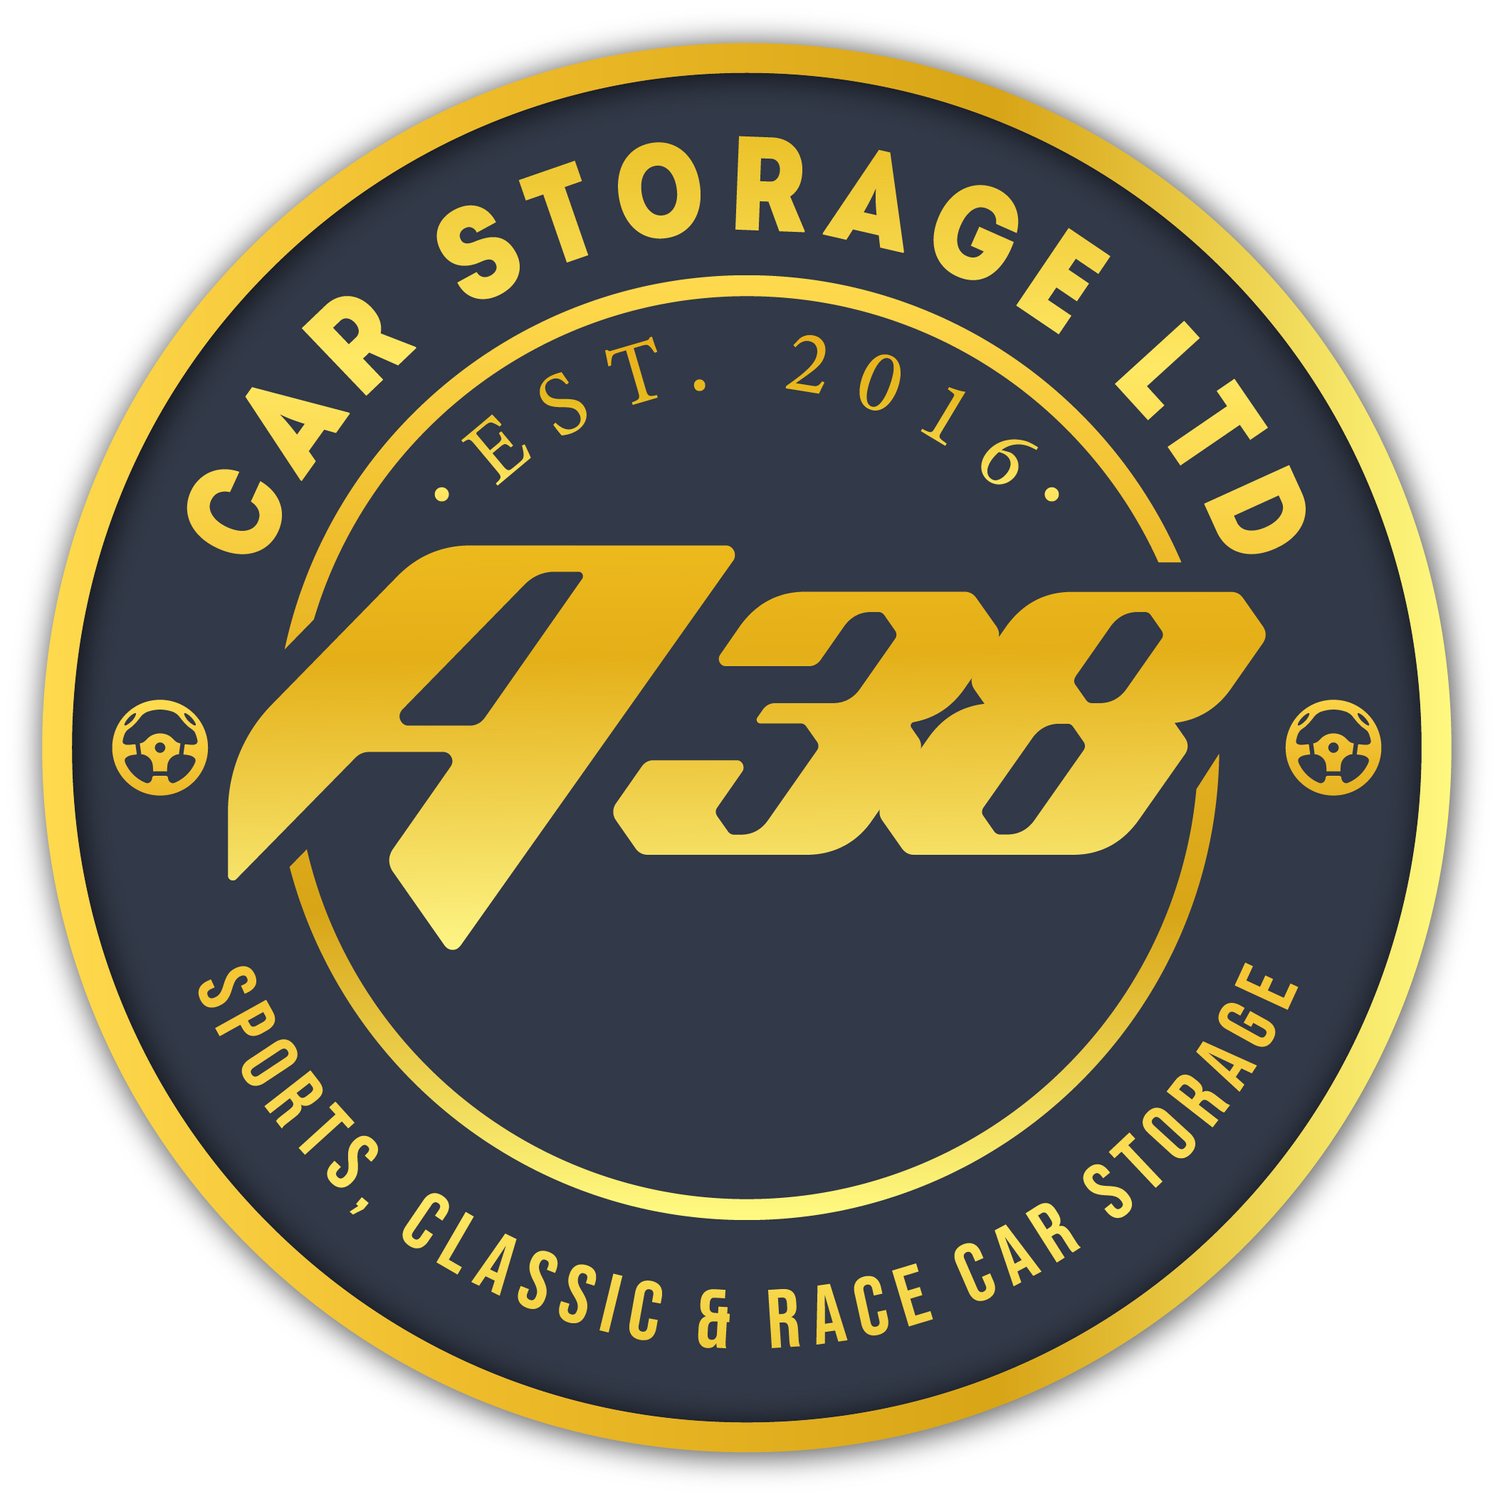 A38 Car Storage